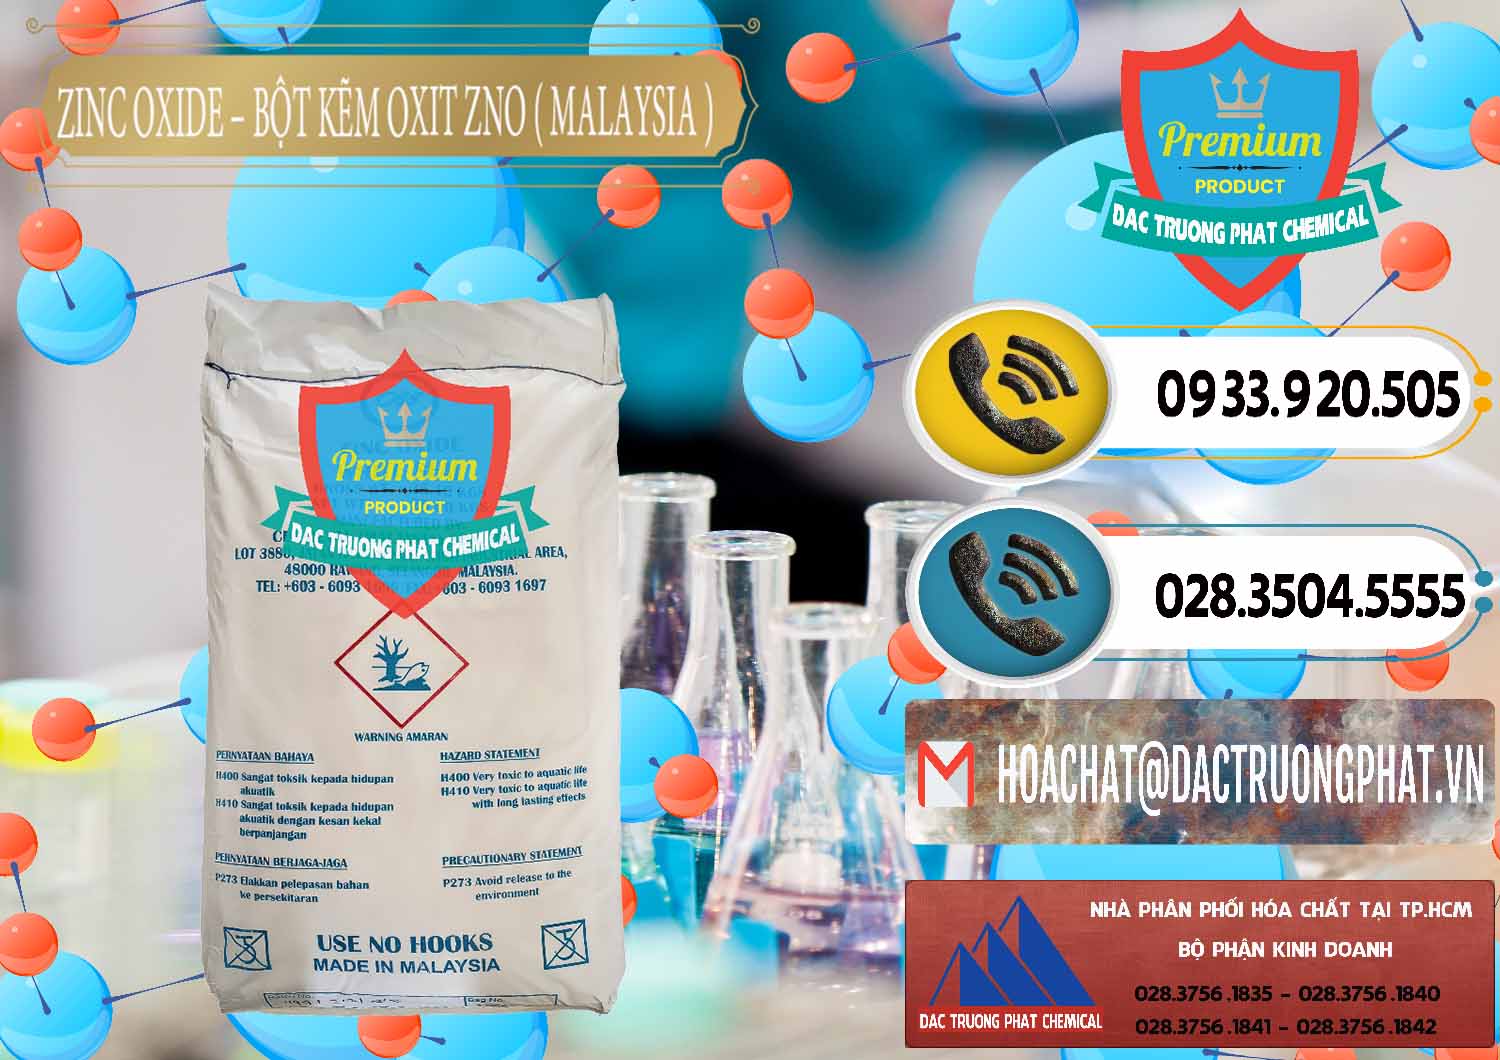 Nơi chuyên bán ( phân phối ) Zinc Oxide - Bột Kẽm Oxit ZNO Malaysia - 0179 - Đơn vị kinh doanh ( cung cấp ) hóa chất tại TP.HCM - hoachatdetnhuom.vn